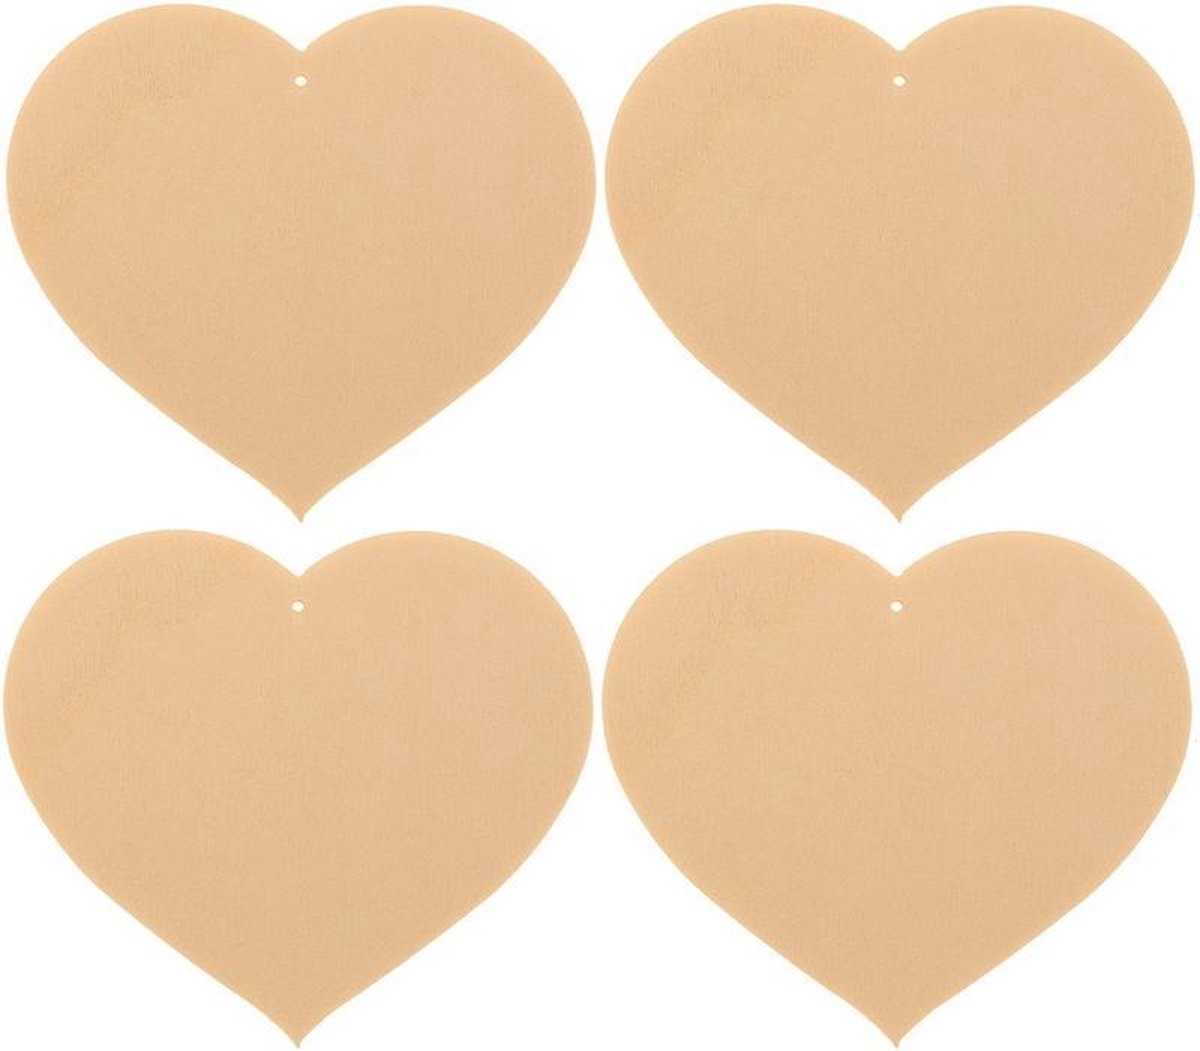 12x Houten hartjes 8 x 7 cm - Hobby/knutselmateriaal - Valentijn/Moederdag/Vaderdag cadeau/kado knutselen - Houten harten knutselen/schilderen